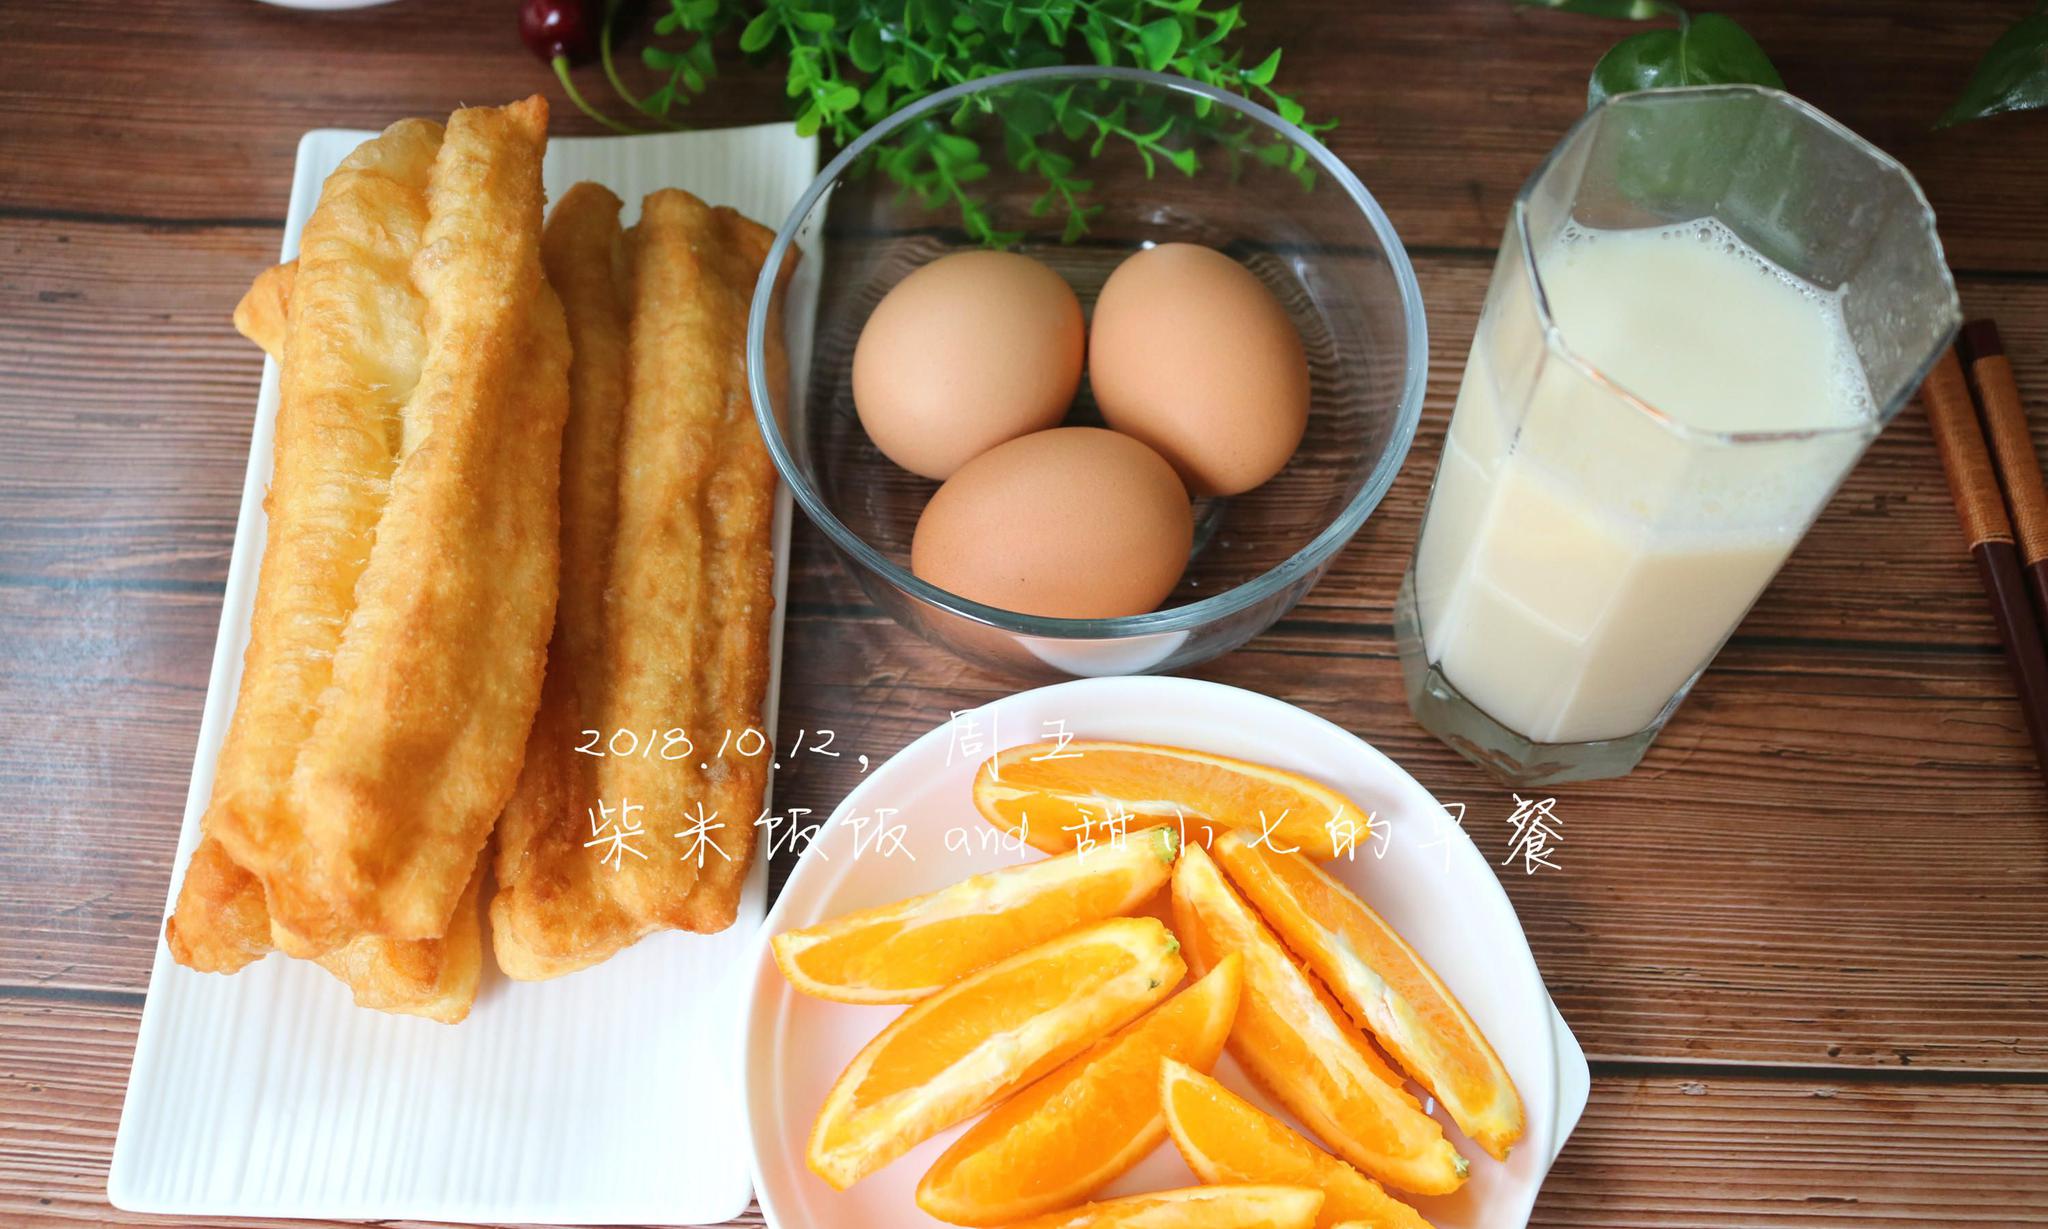 今日早餐:自制油条,白煮鸡蛋,豆浆,橙子.